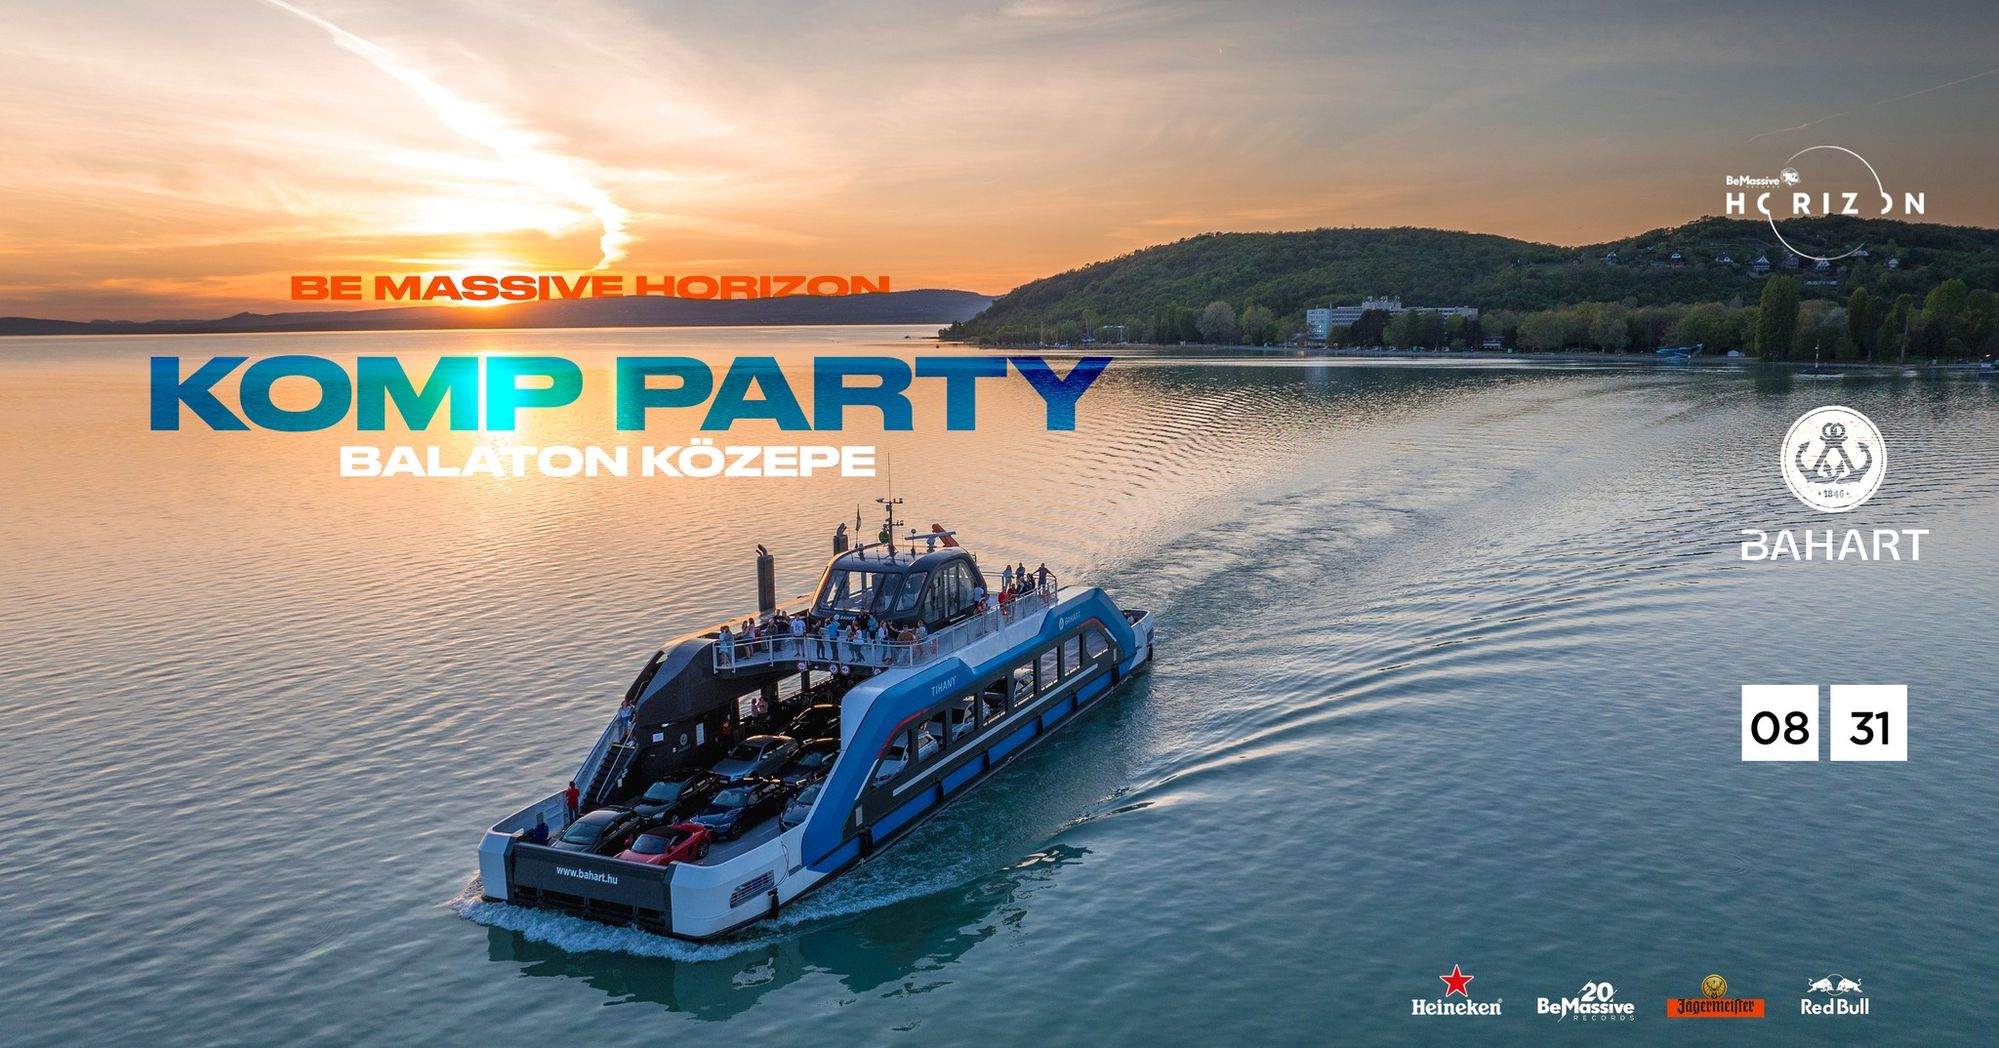 Be Massive Horizon & BAHART: Balaton KÖZEPE - Boat Party - Página frontal